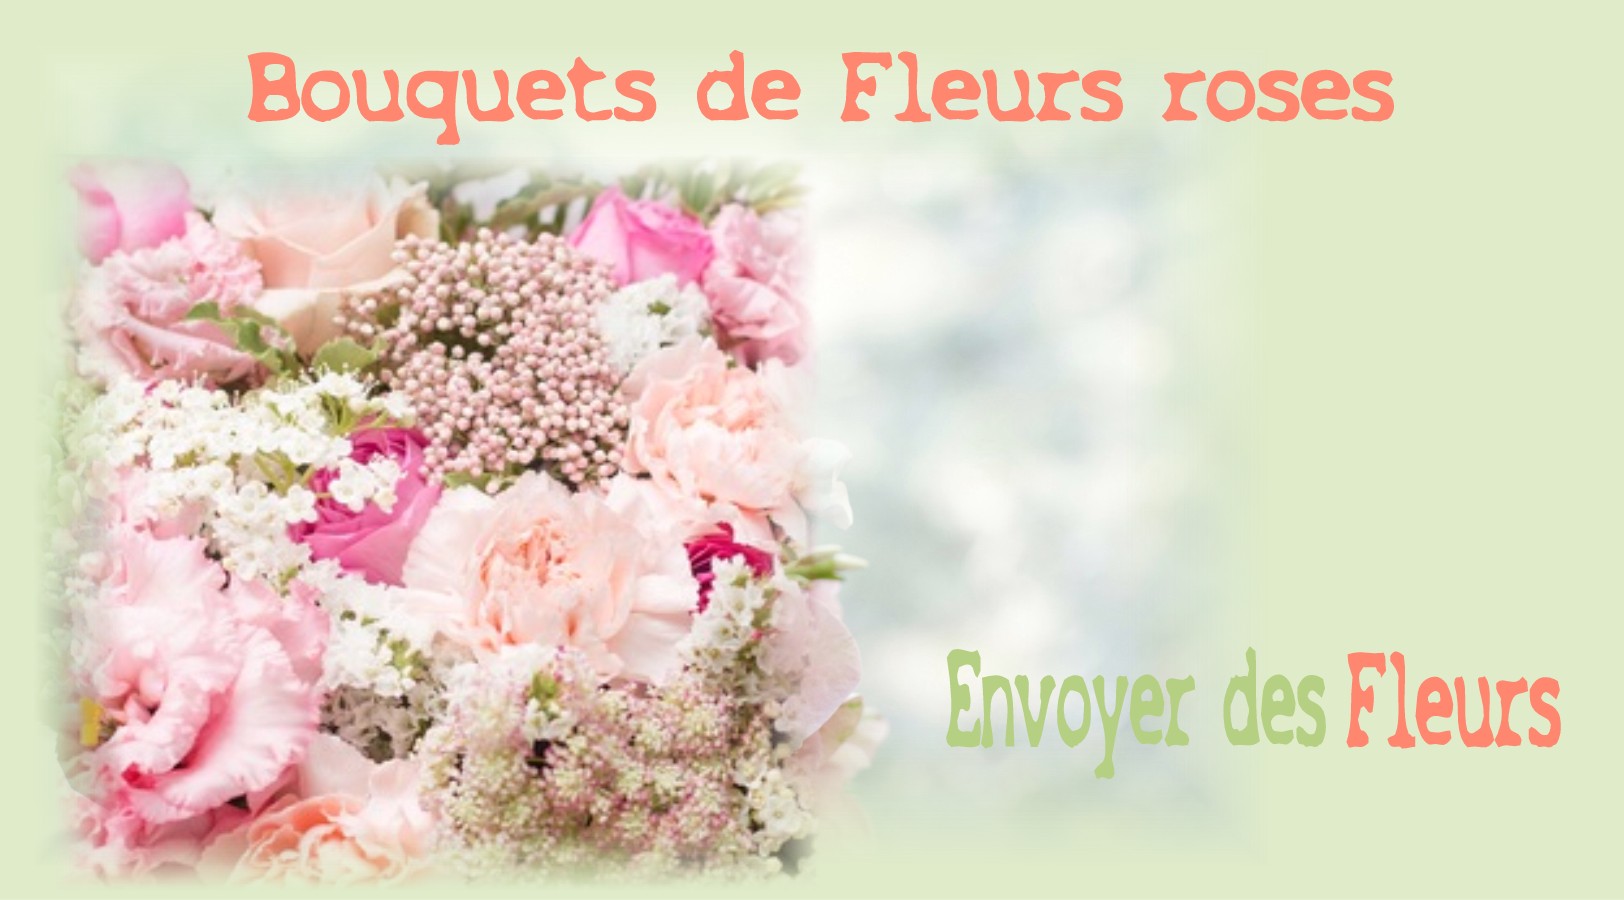 BOUQUETS DE FLEURS ROSES - FLEURISTE TOULOUSE (31) - ENVOYER DES FLEURS